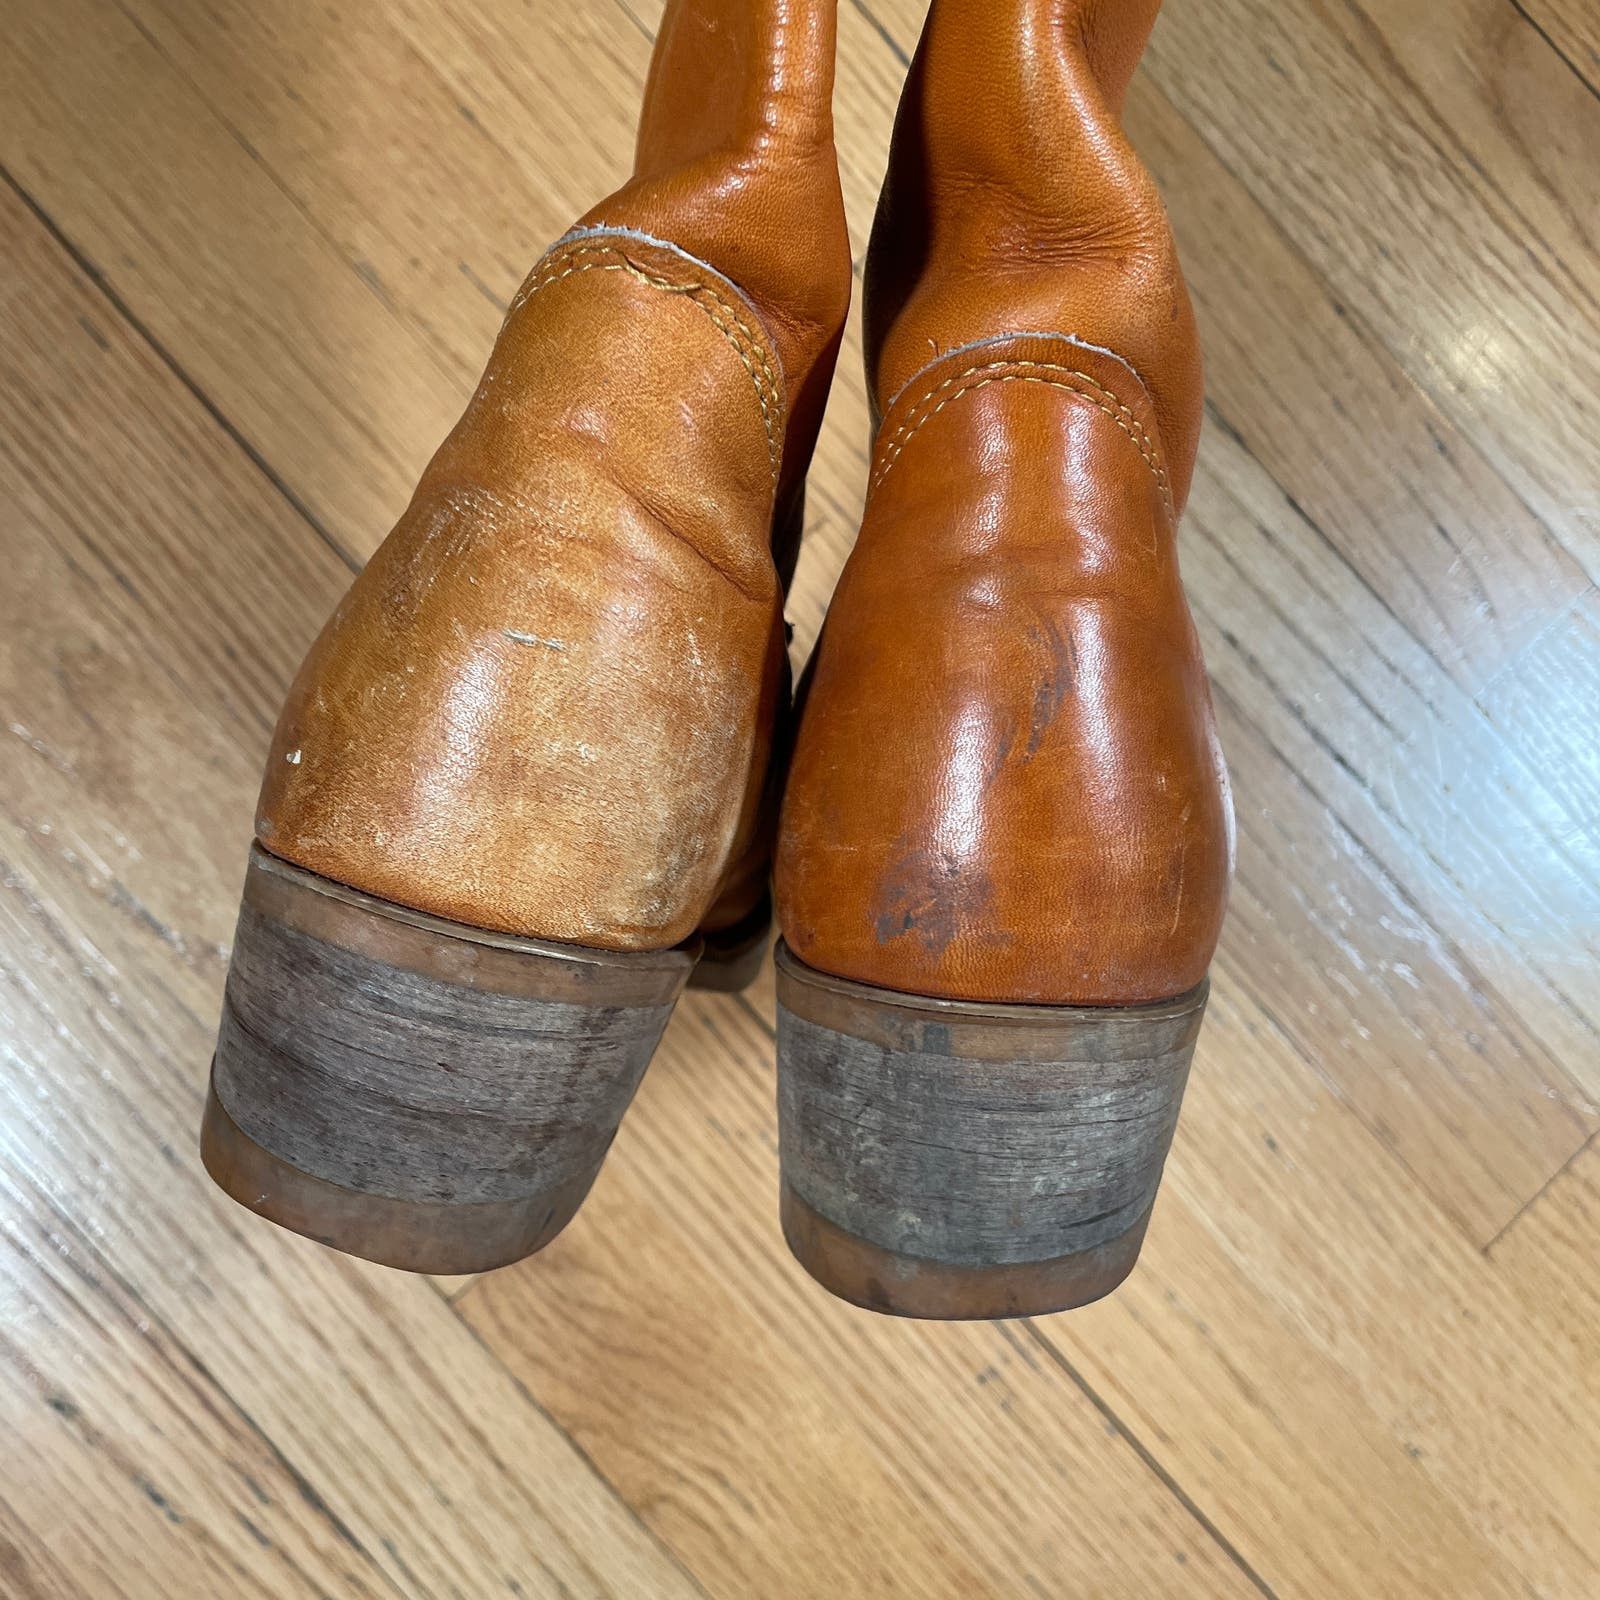 Vintage Vintage Leather Calf Boots 8 Mens Size US 8 / EU 41 - 5 Thumbnail